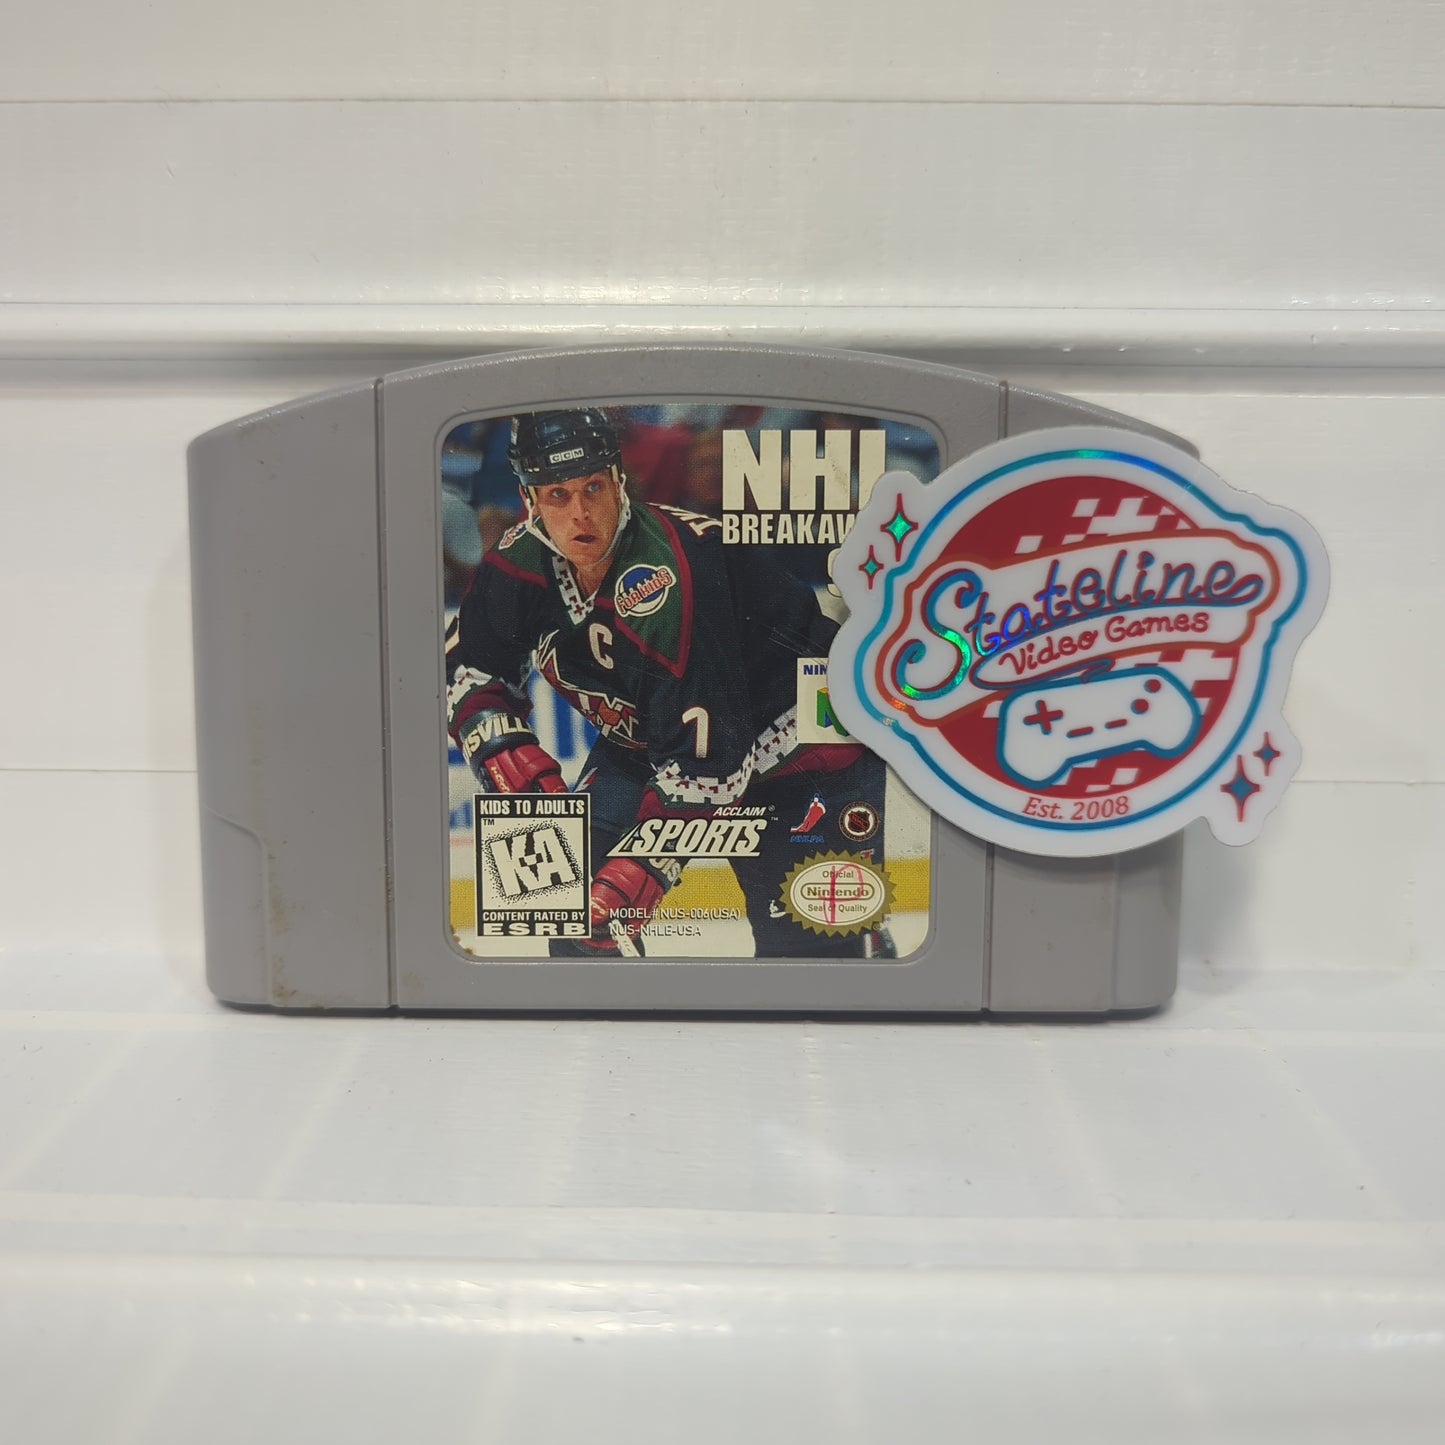 NHL Breakaway '98 - Nintendo 64